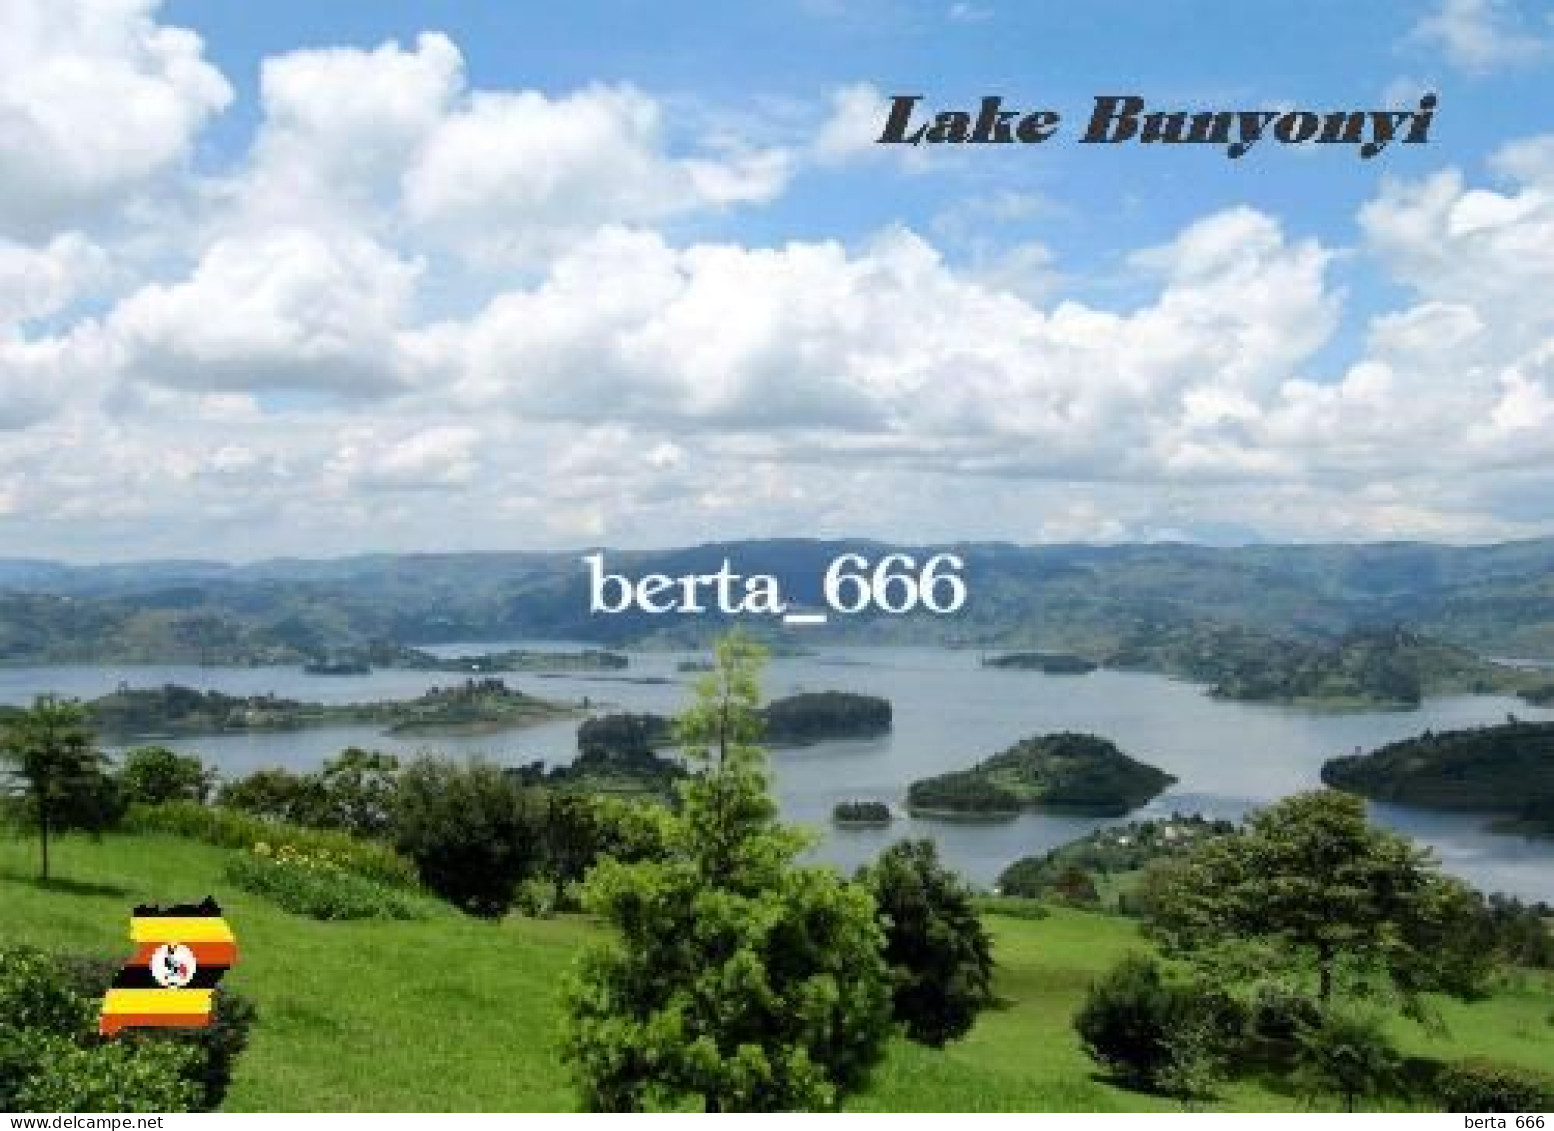 Uganda Lake Bunyony View New Postcard - Uganda